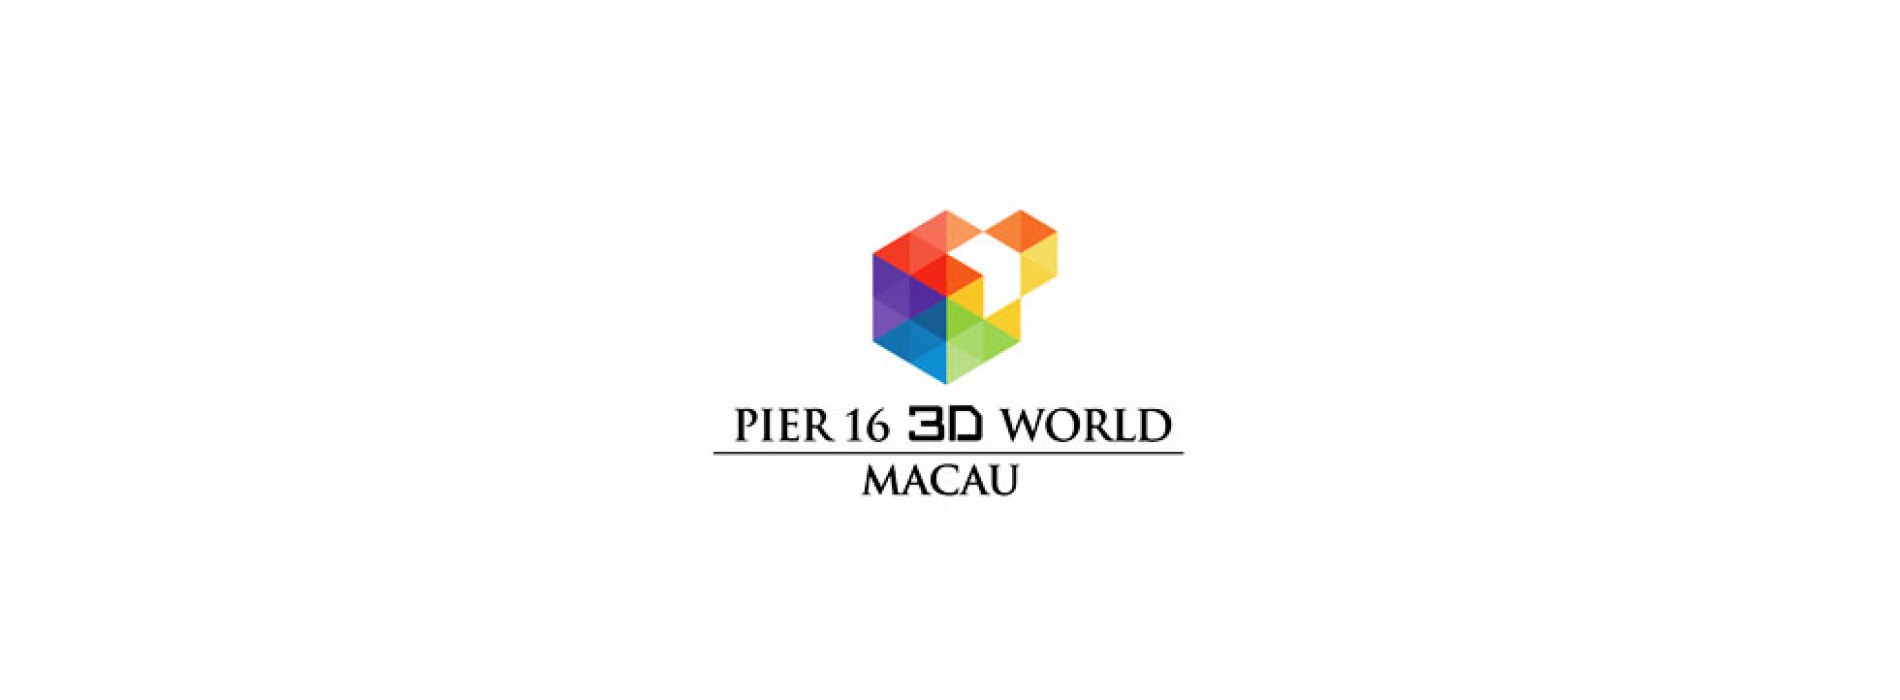 Macao’s brings first 3D museum ‘Pier 16 Macau 3D World’